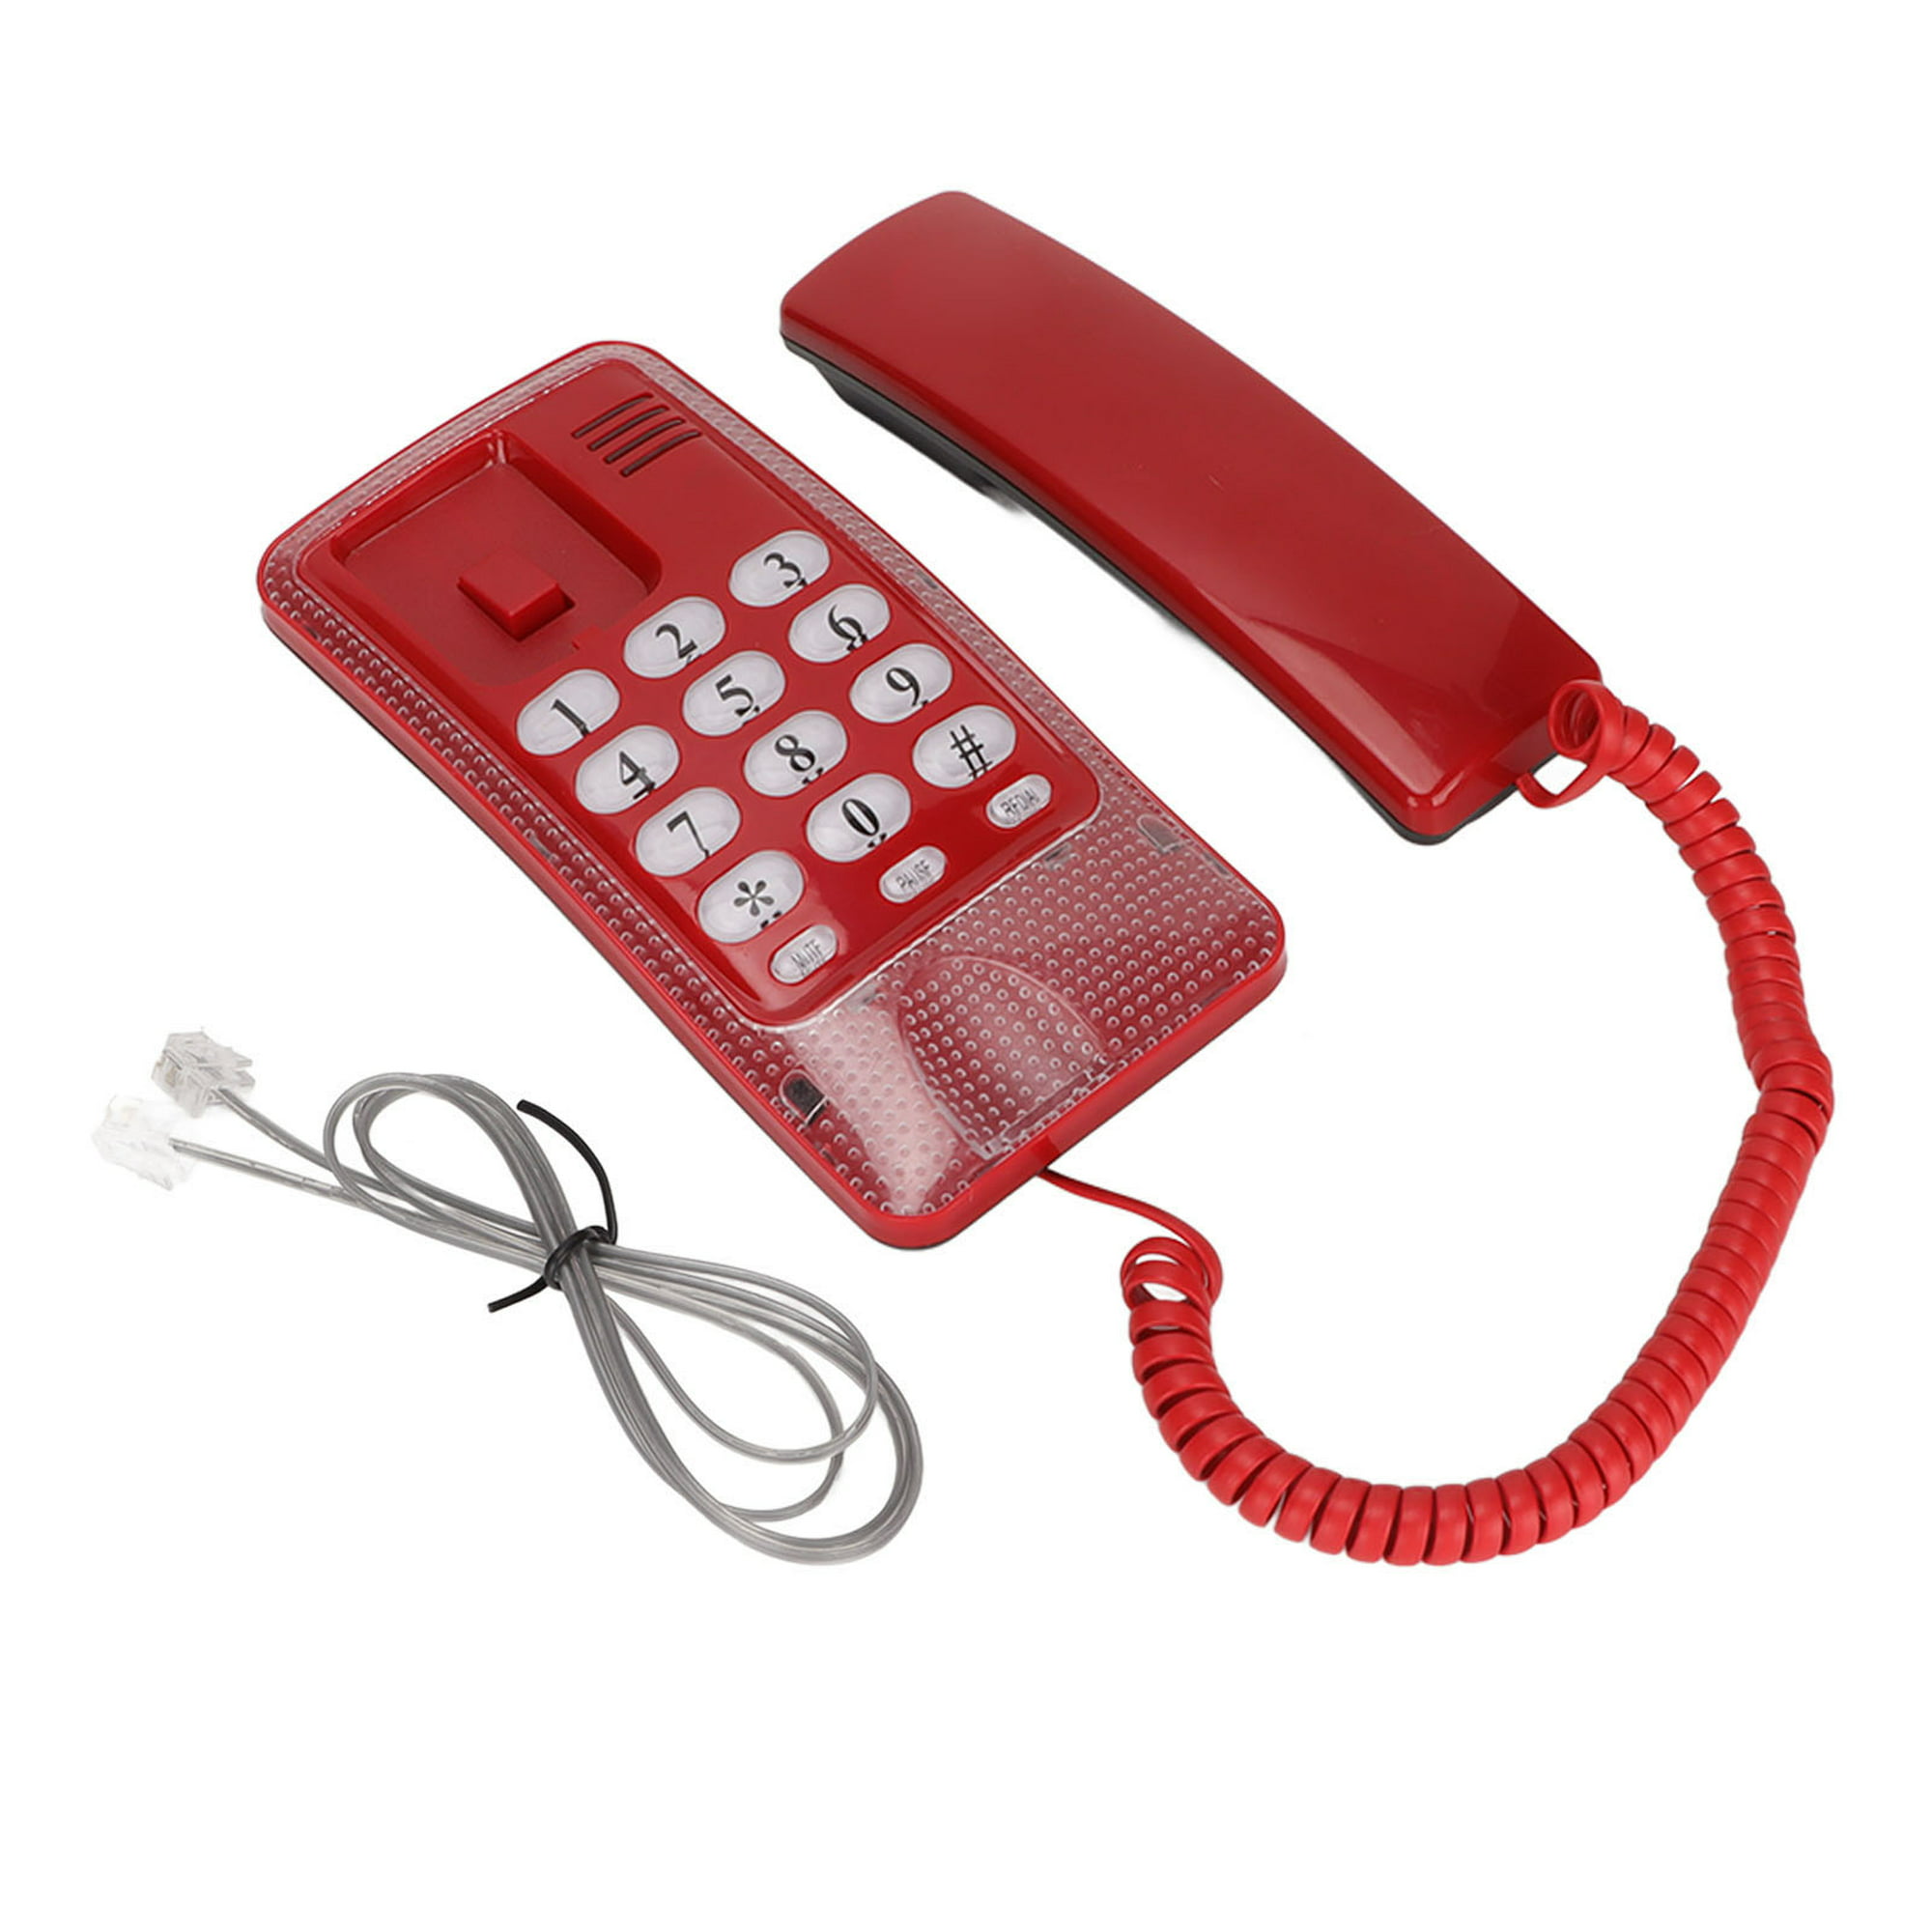 Teléfono fijo con cable, teléfono fijo doméstico KXT504, teléfono